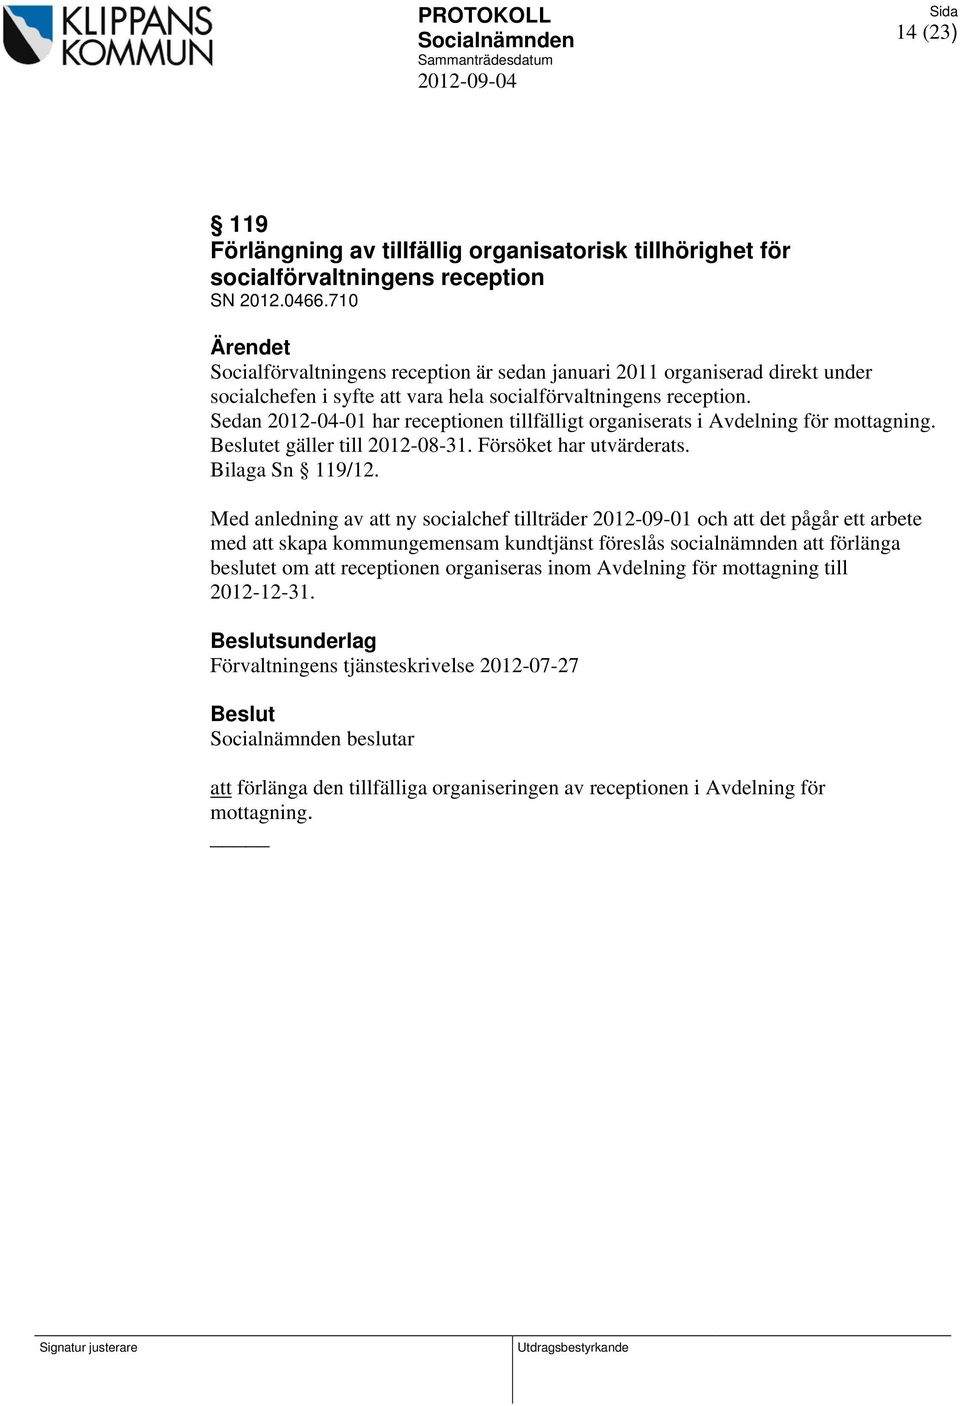 Sedan 2012-04-01 har receptionen tillfälligt organiserats i Avdelning för mottagning. et gäller till 2012-08-31. Försöket har utvärderats. Bilaga Sn 119/12.